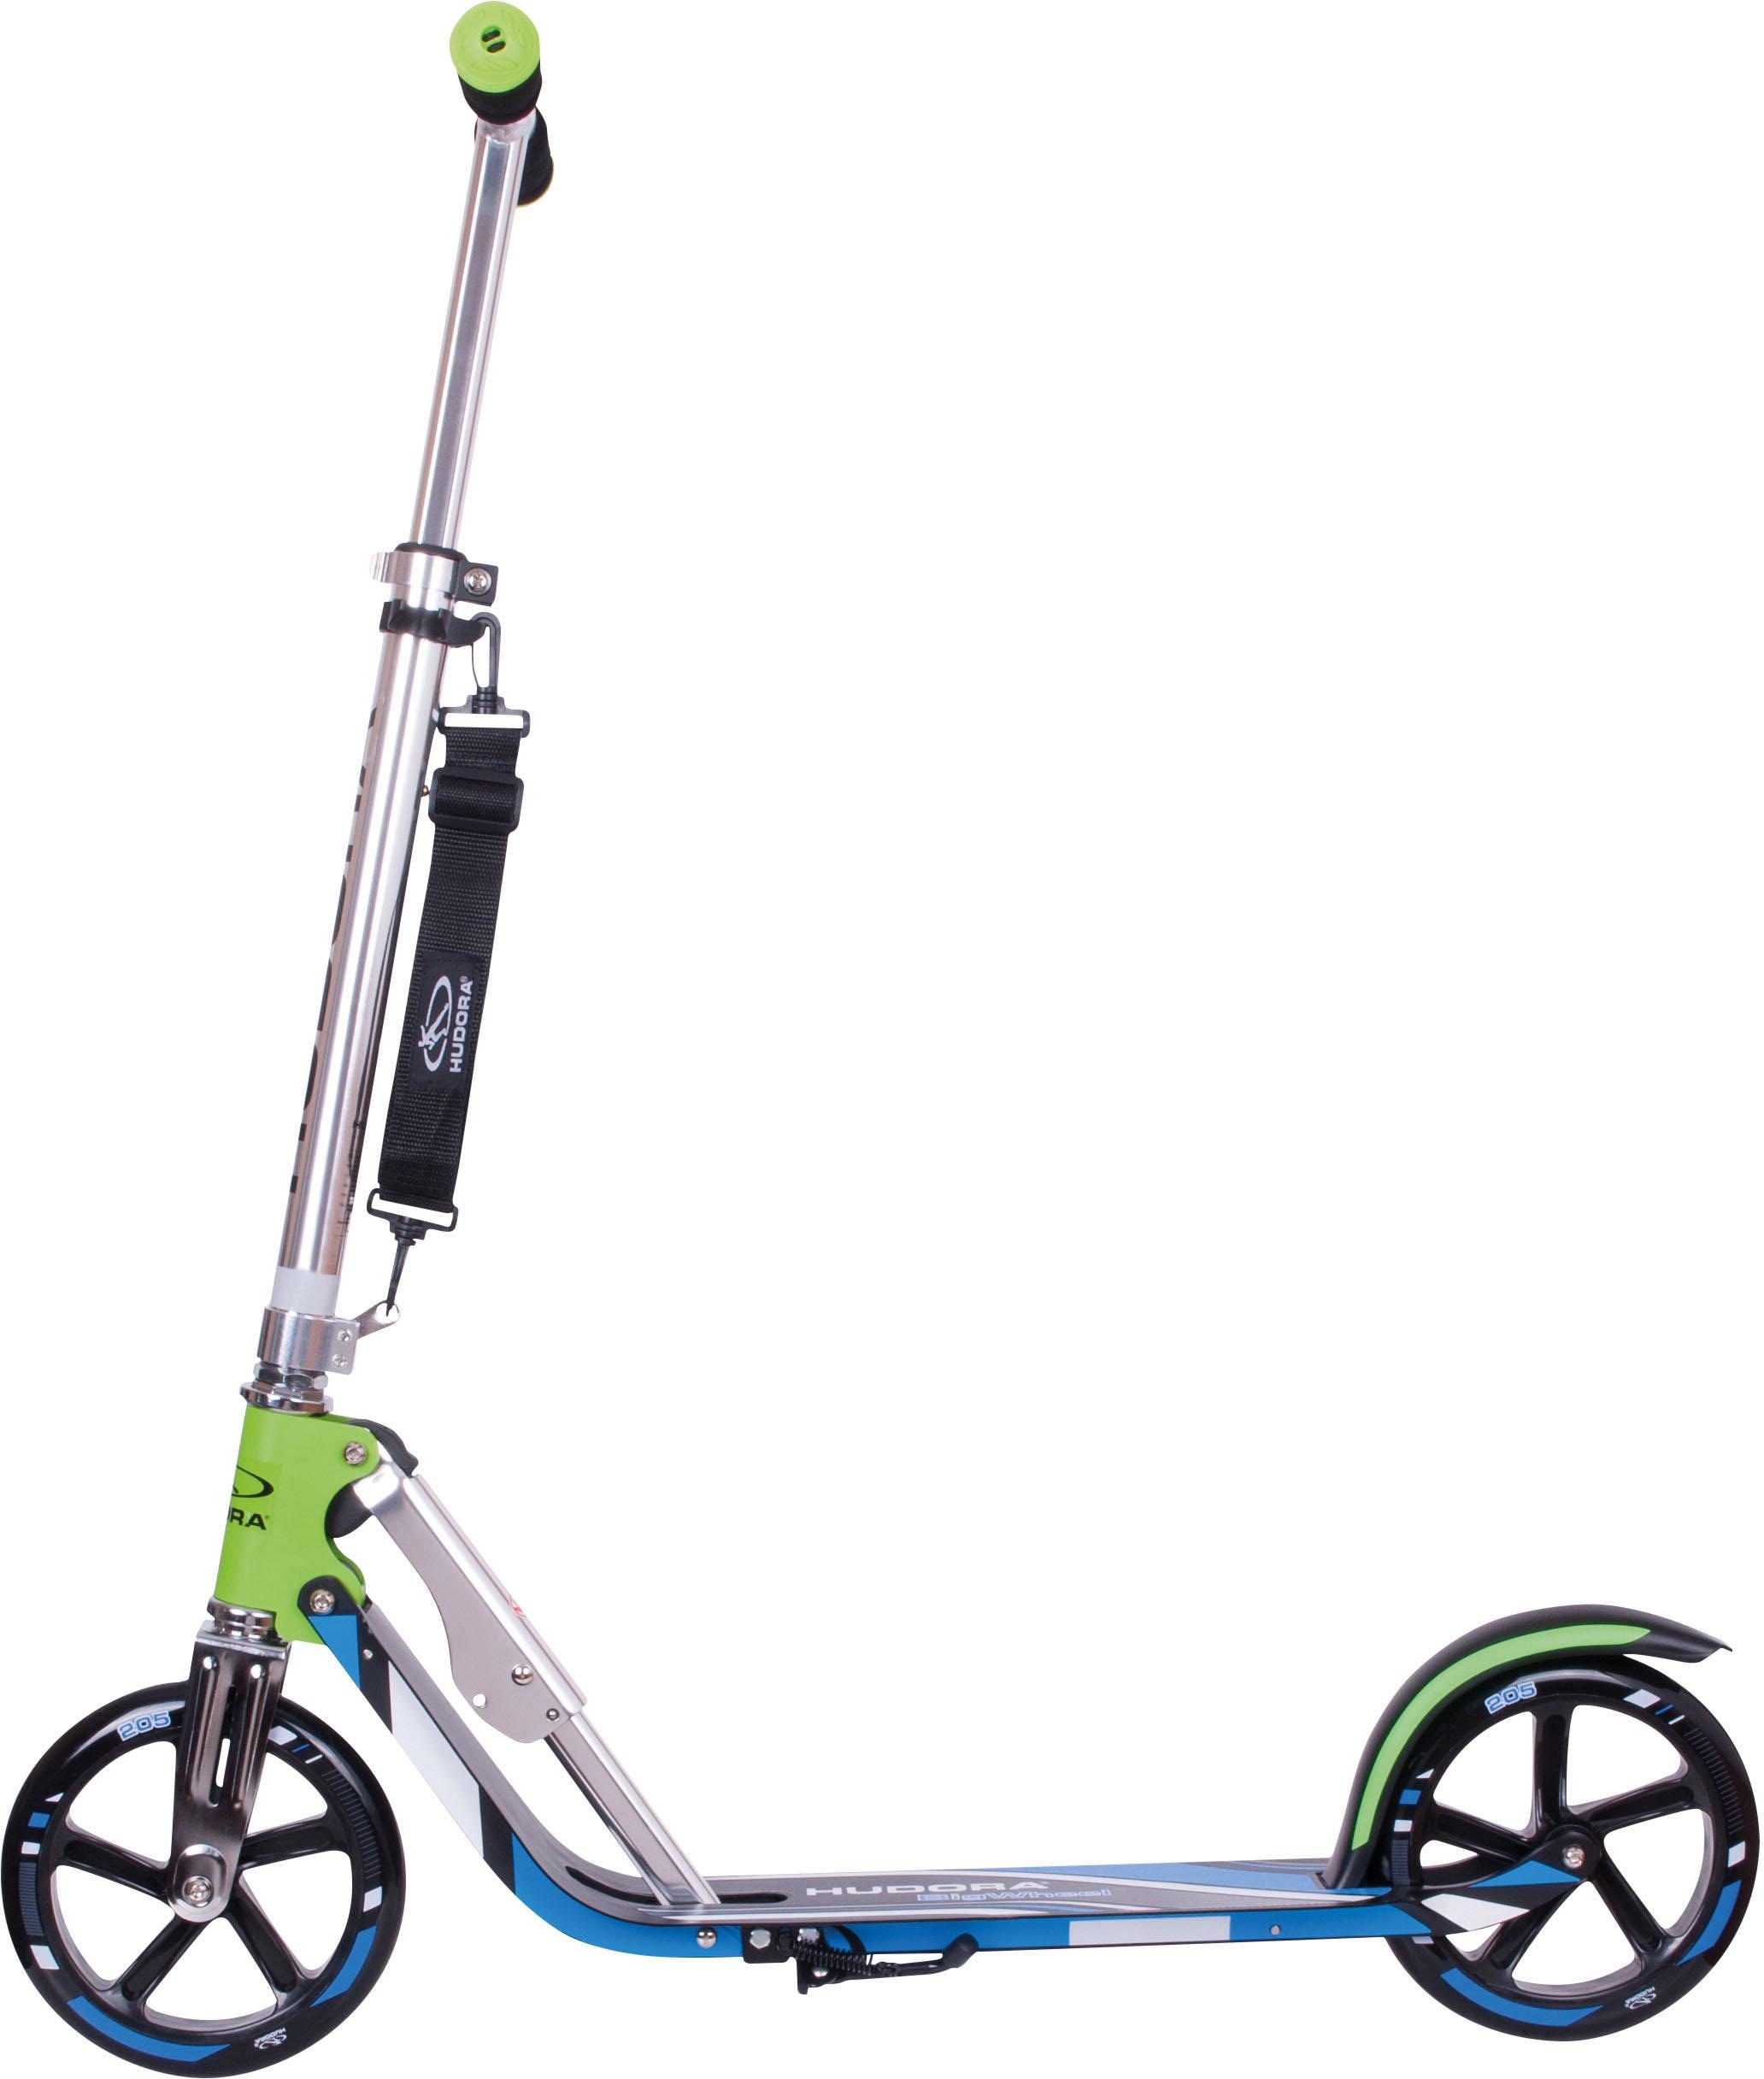 Erwachsene Roller Kinder Roller Scooter Faltbar Einstellbar 120 kg